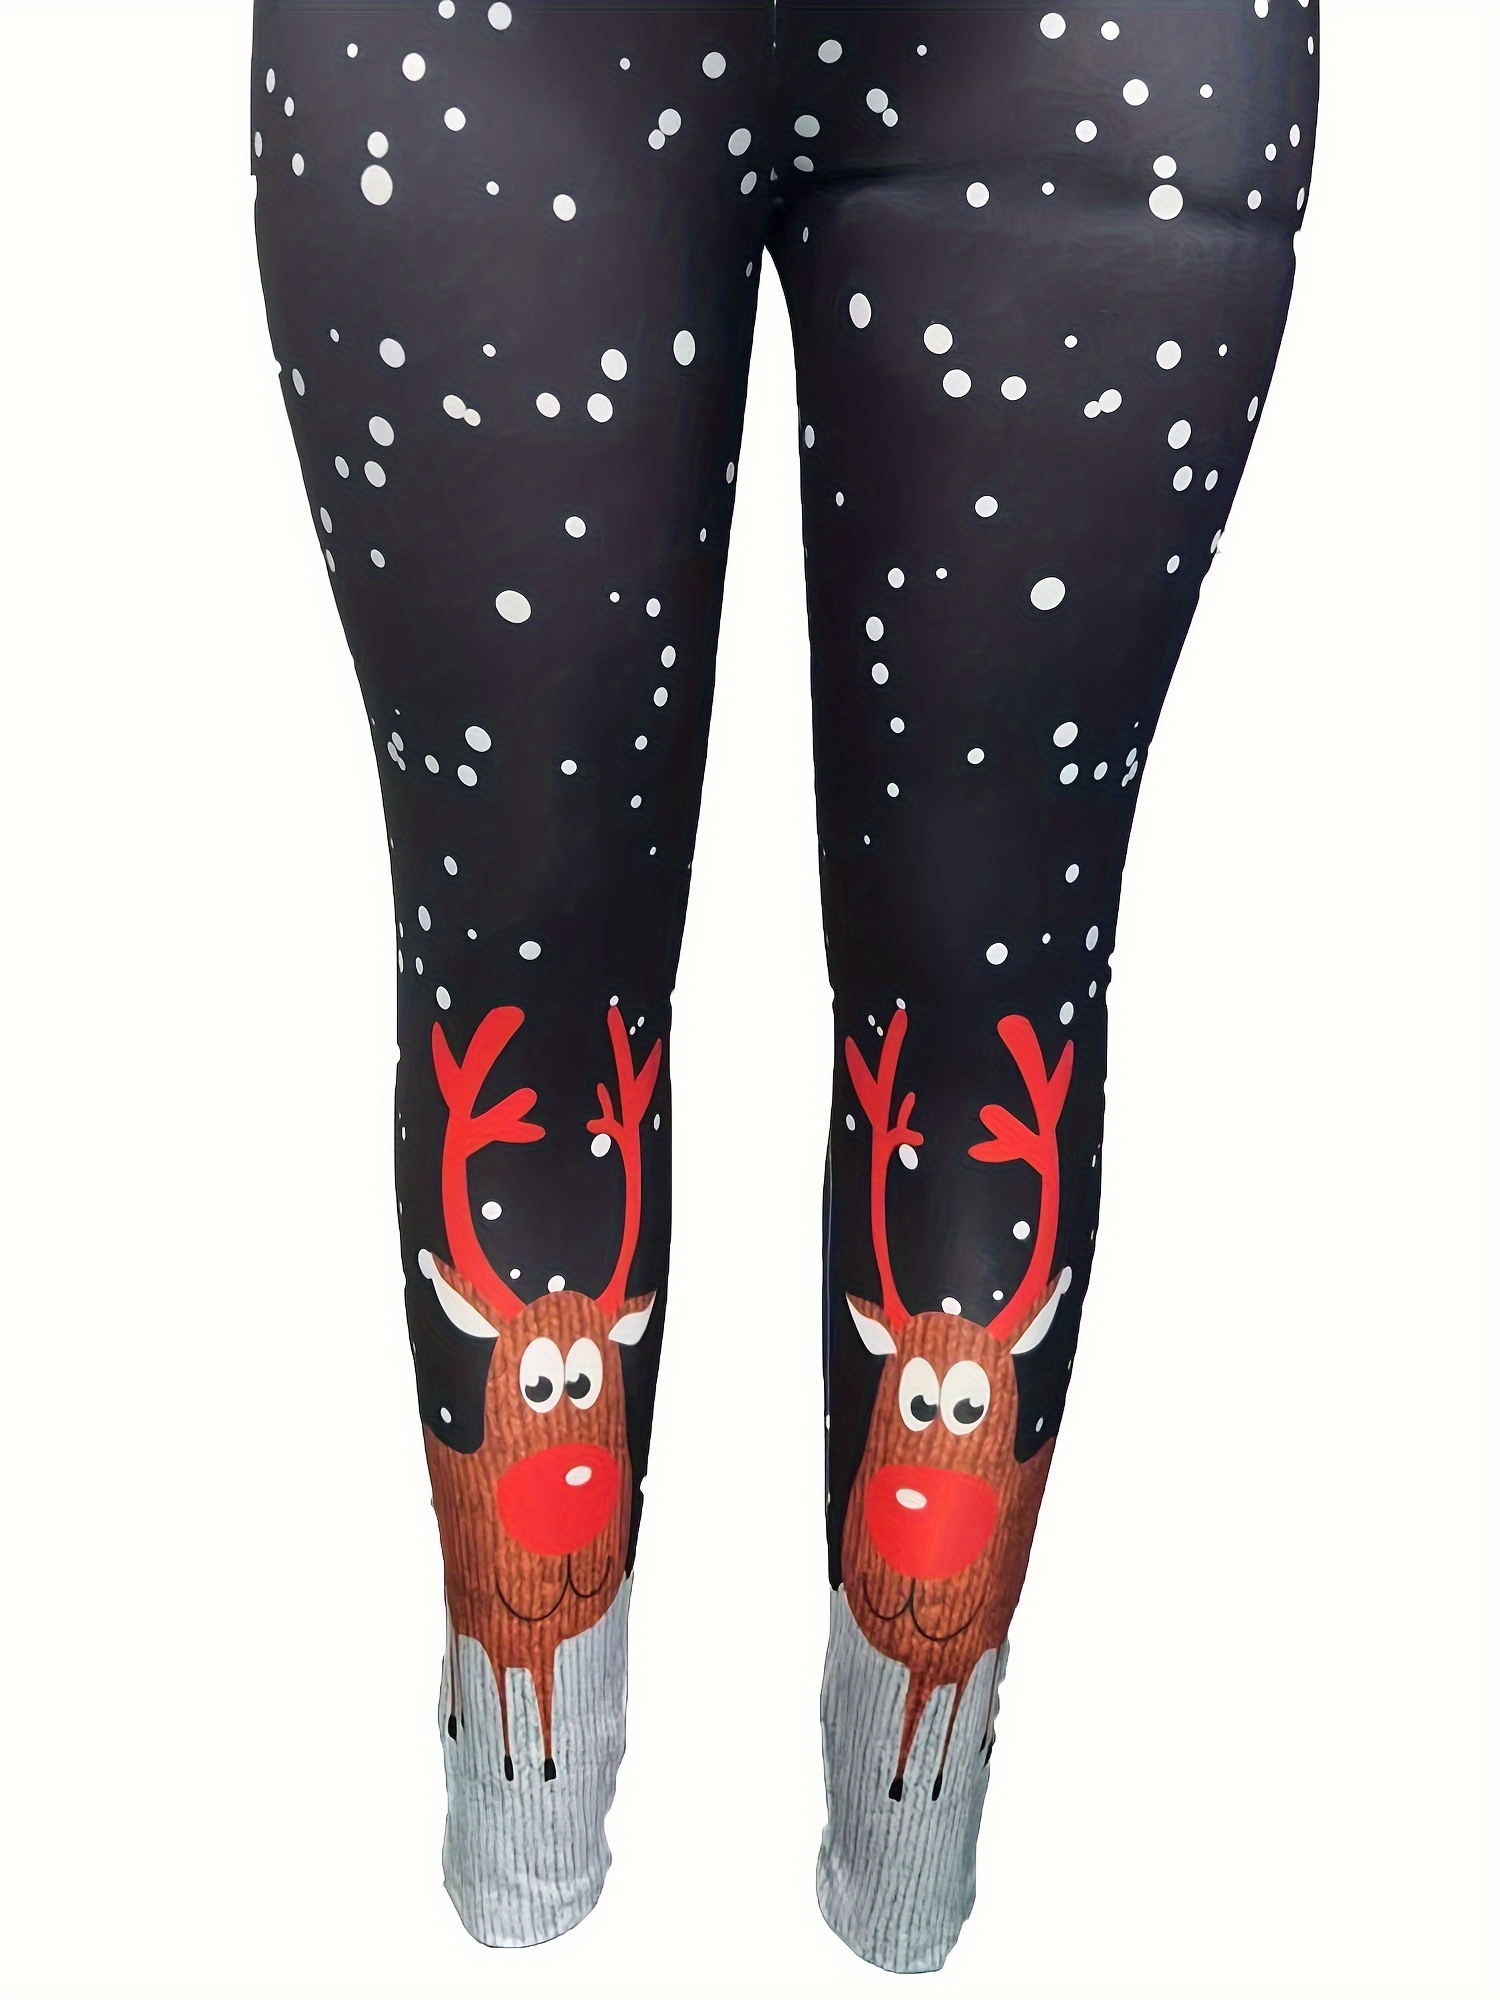  Womens Christmas Leggings Plus Size Reindeer Print